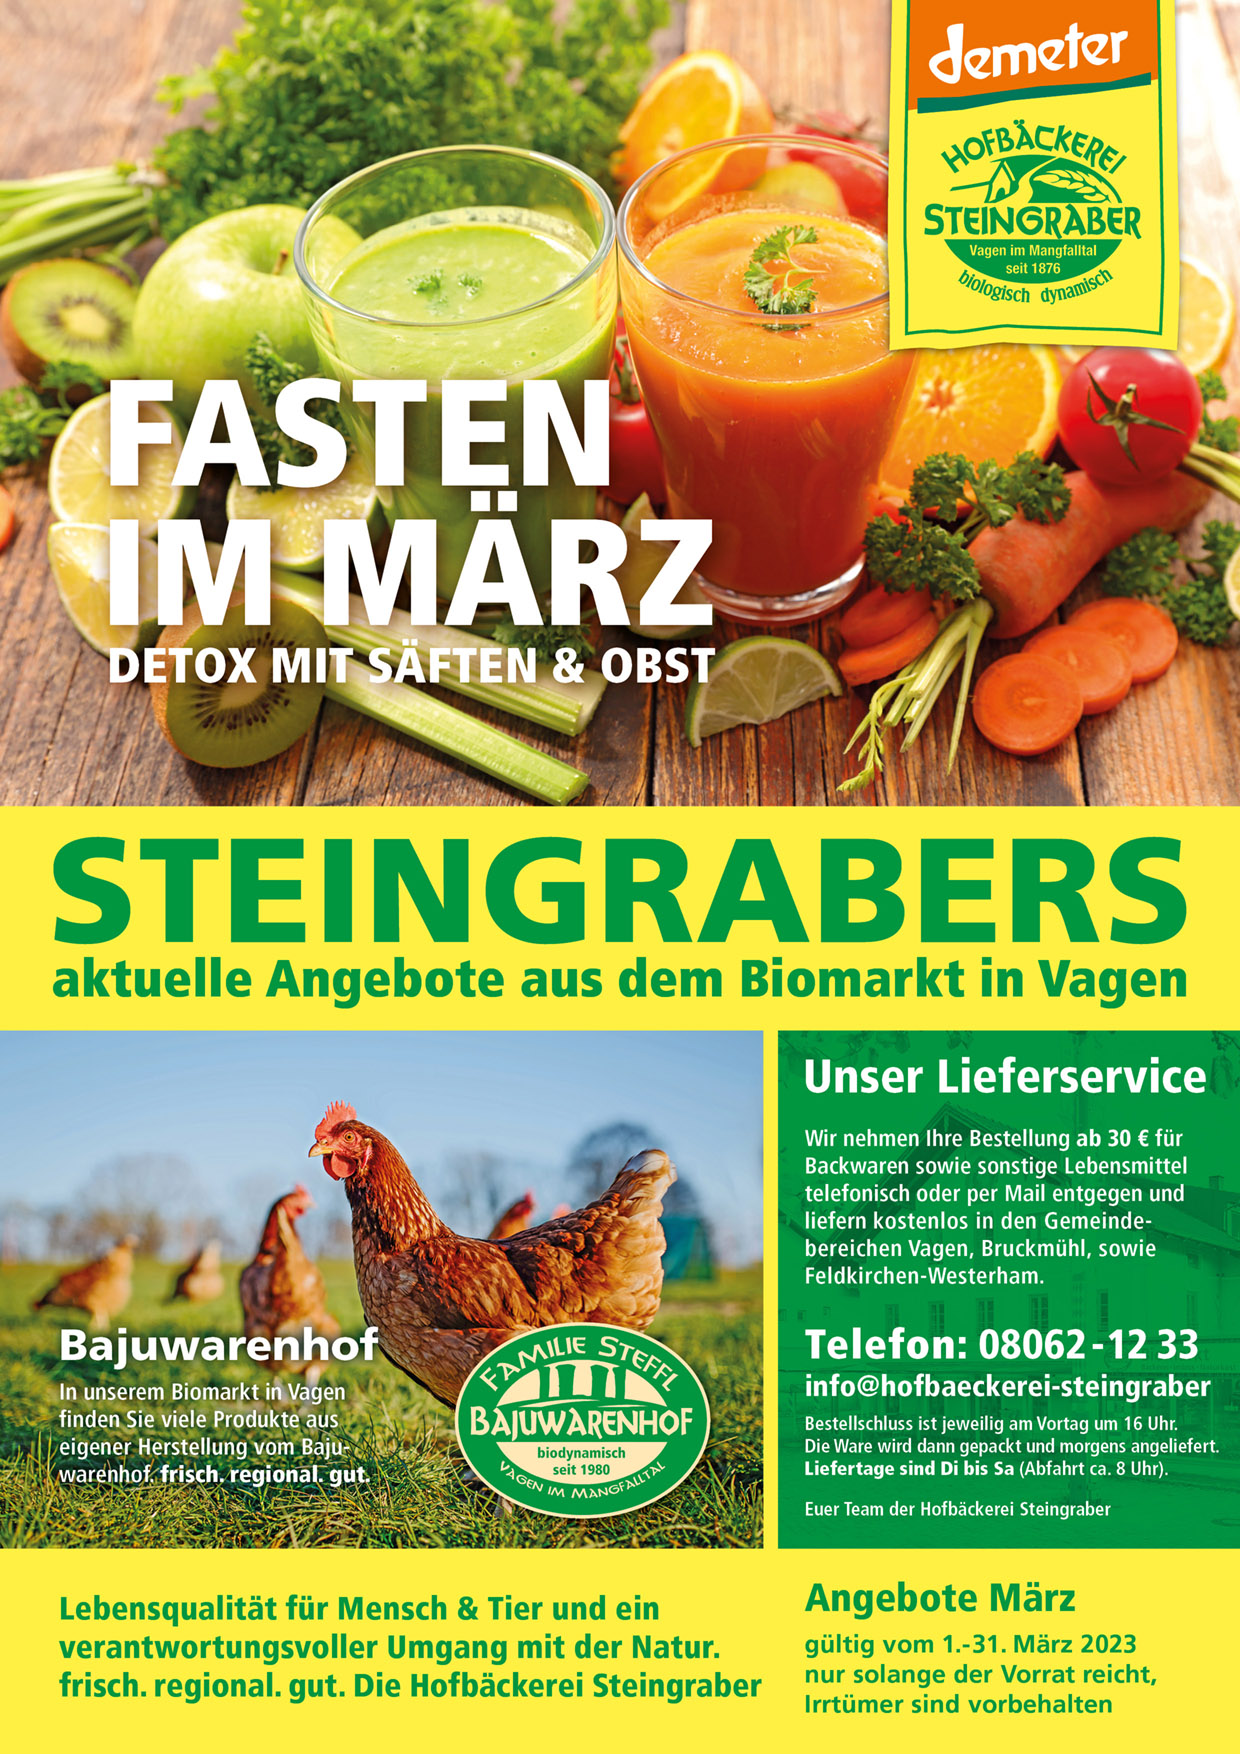 Steingraber Angebot A4 Maerz 2023 1